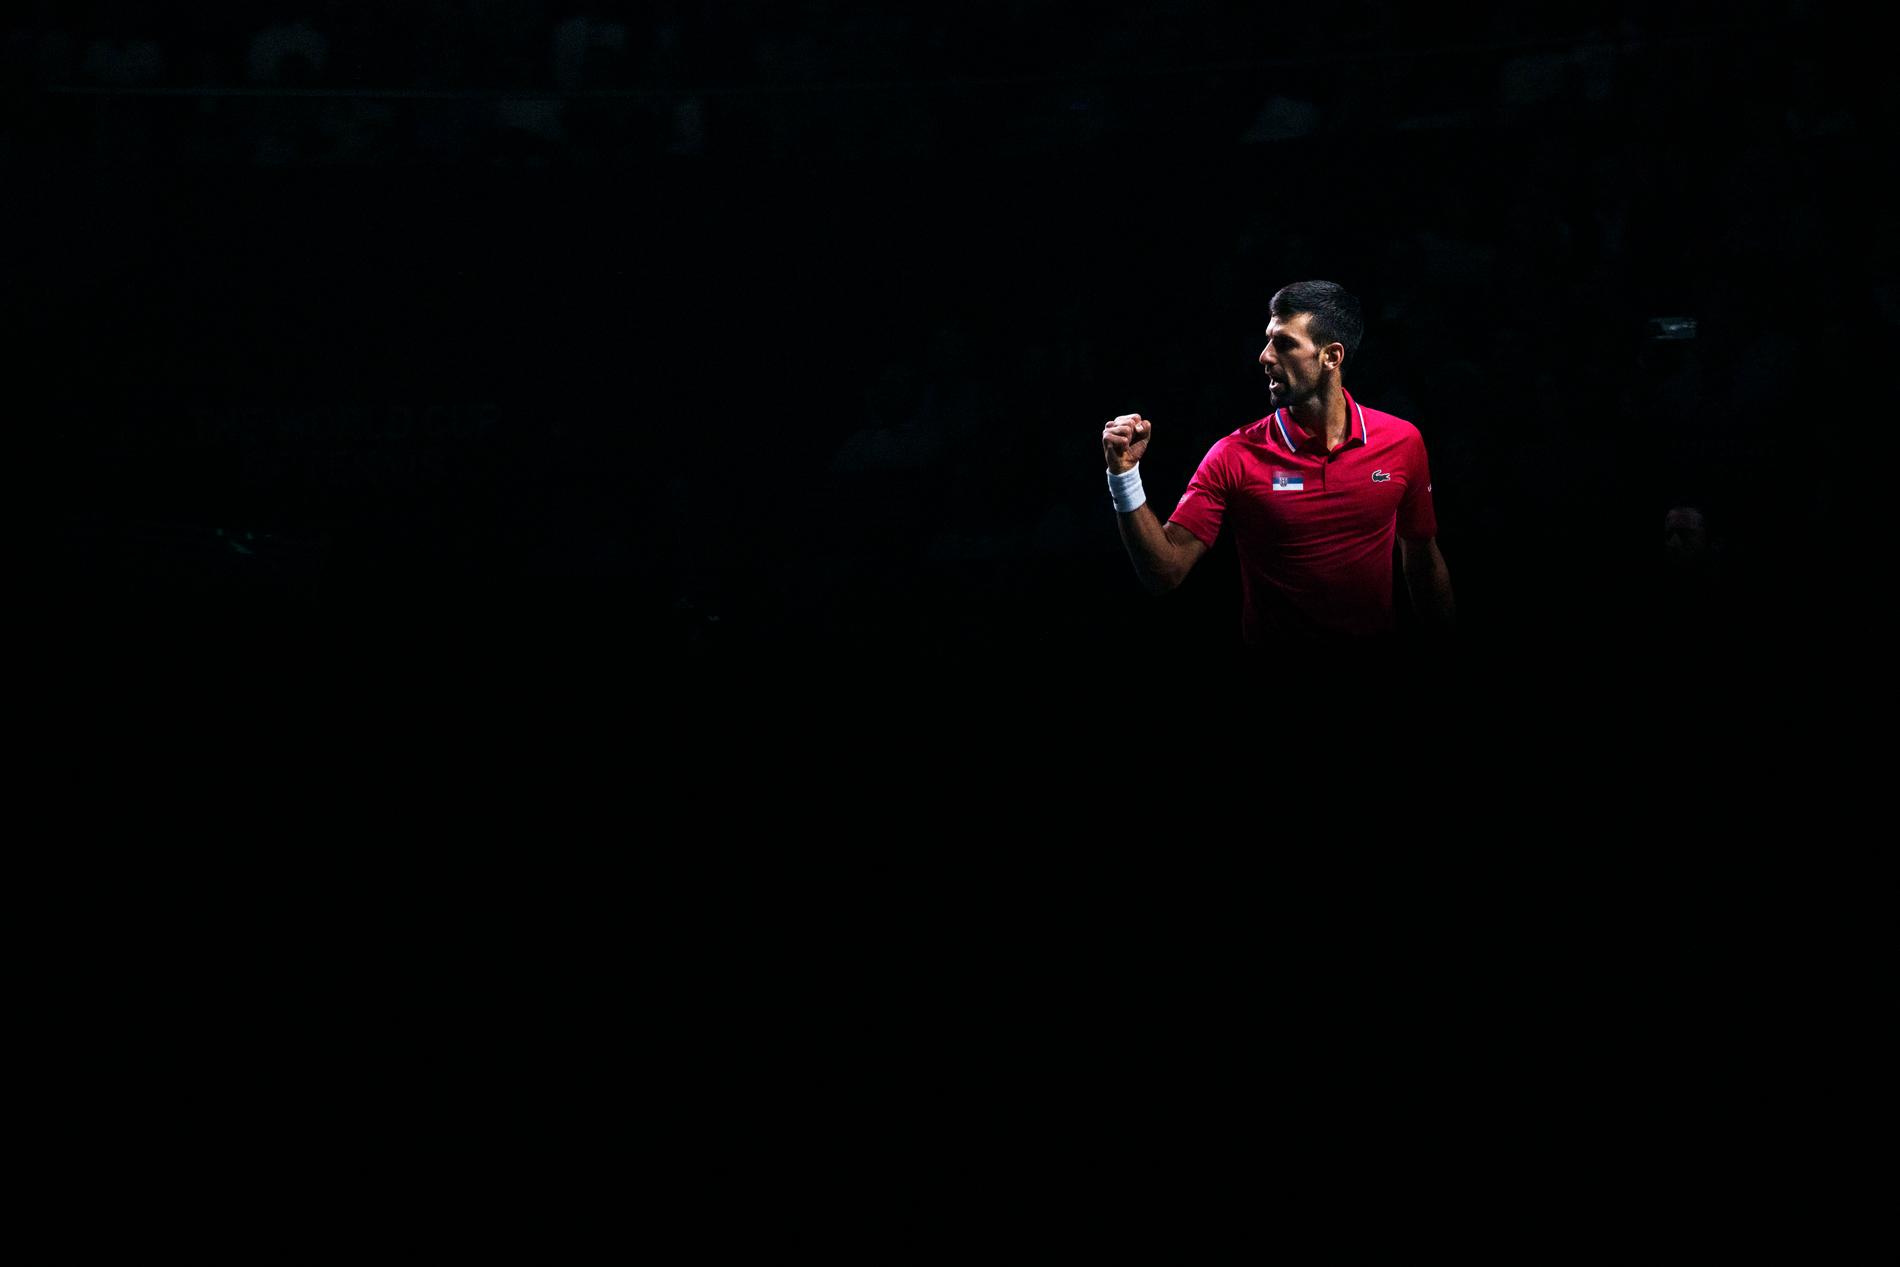 La leggenda del tennis serbo Novak Djokovic ha vinto 24 titoli in singolo nel corso della sua carriera tennistica, il più grande risultato mai raggiunto da una stella del tennis maschile. 